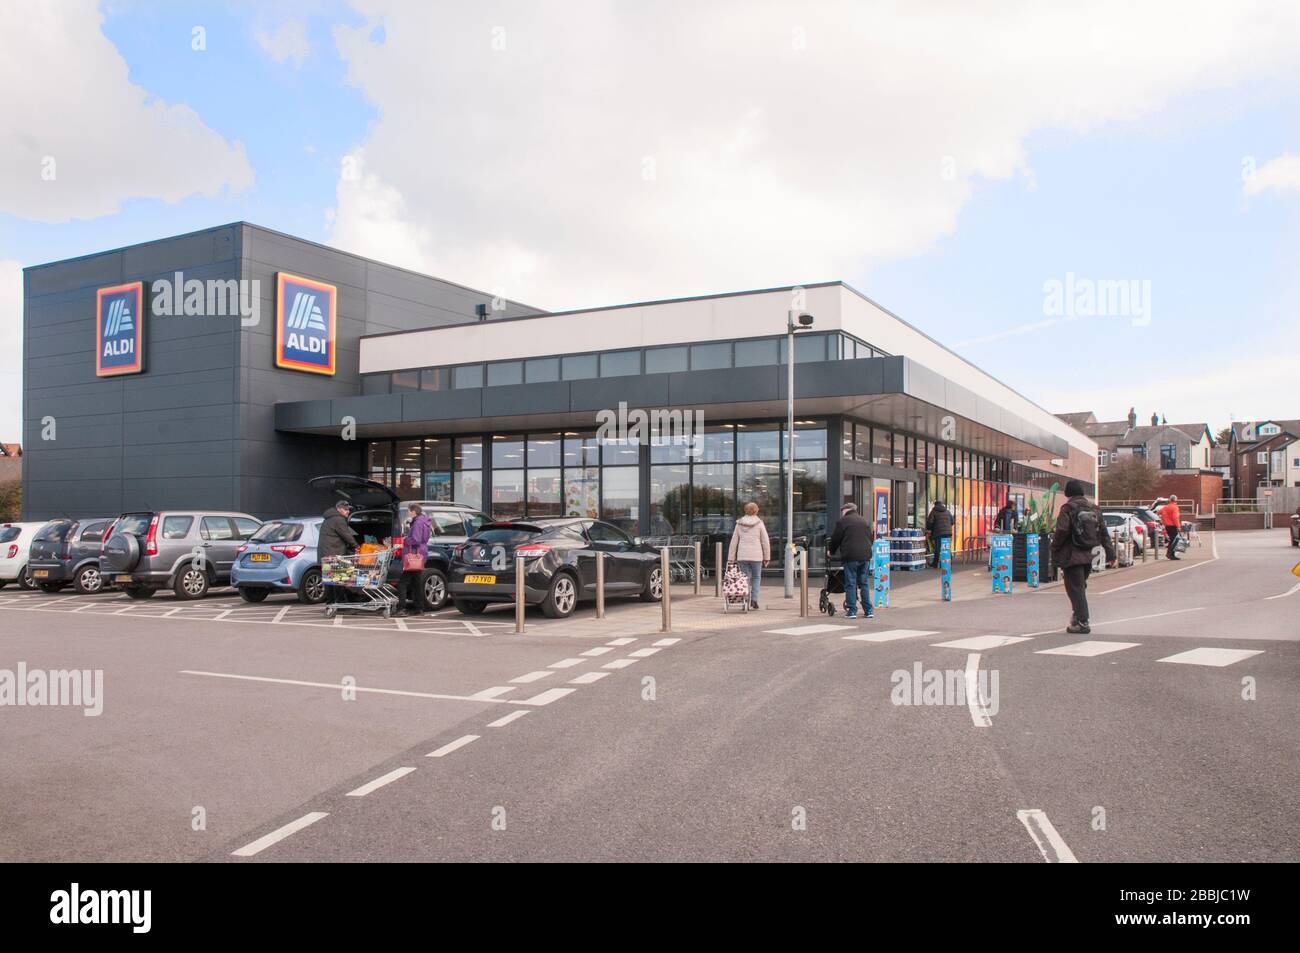 Les clients qui vont dans un magasin Aldi récemment construit à Poulton le Fylde Lancashire Angleterre Royaume-Uni vendent des articles de réduction des coûts tels que des boissons, de la nourriture, des vêtements, etc Banque D'Images